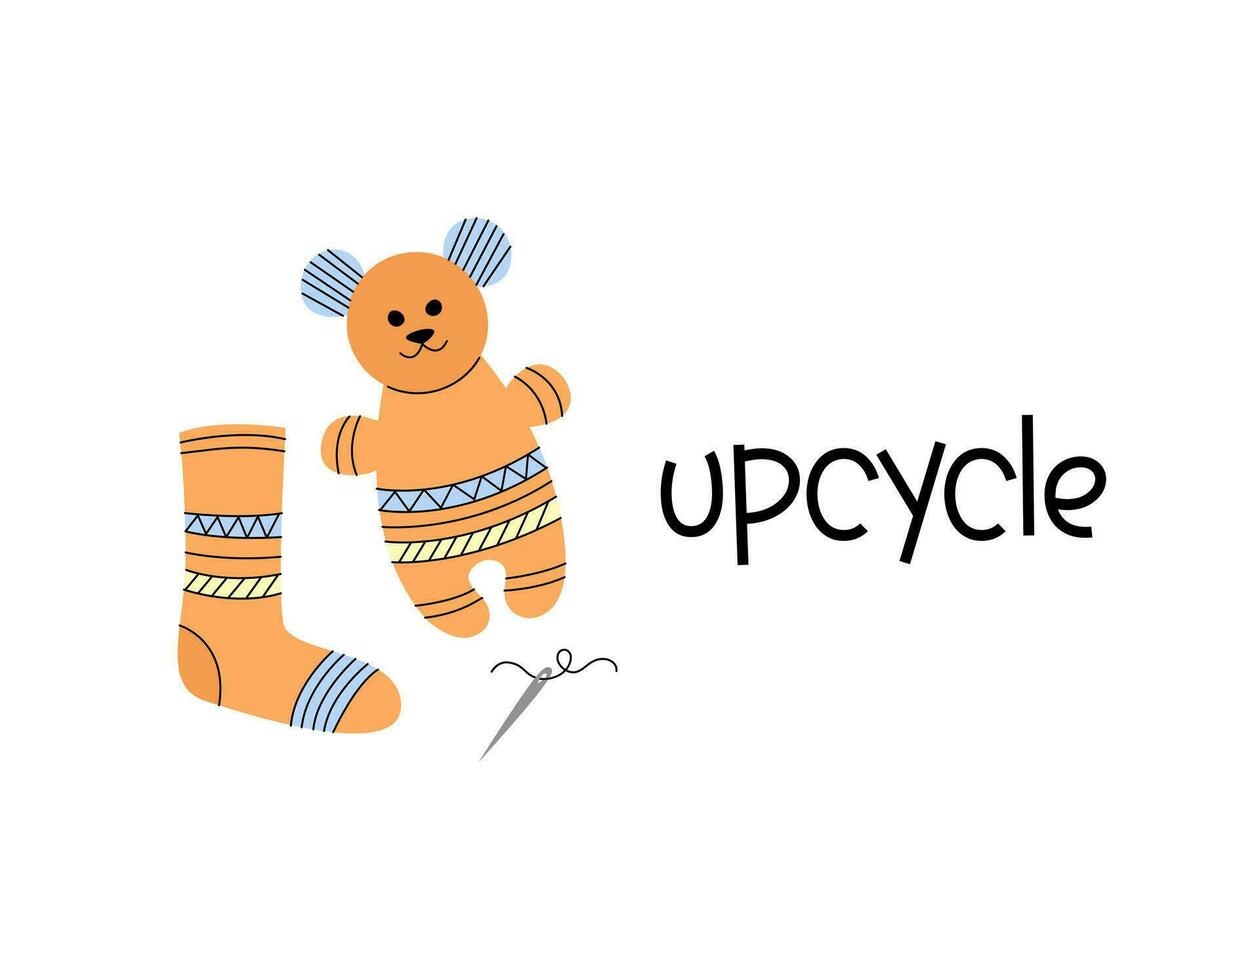 nounours ours cousu de chaussette. Fait main jouet. recyclage concept vecteur illustration. durable vie.